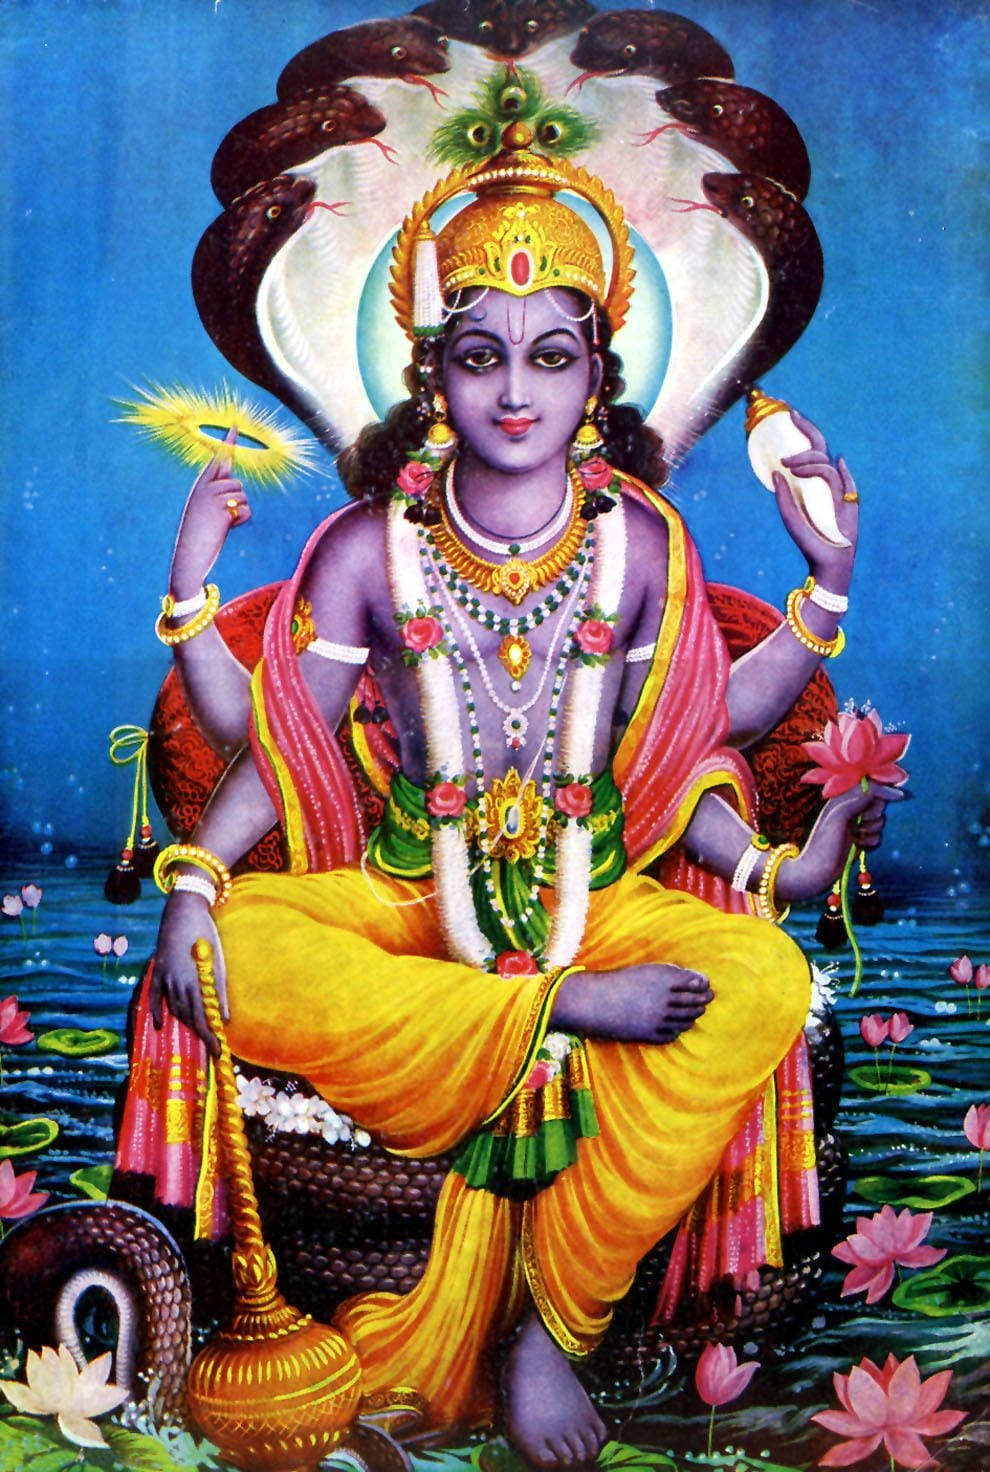 Vishnu Deity Of Peace And Harmony Art Wallpaper